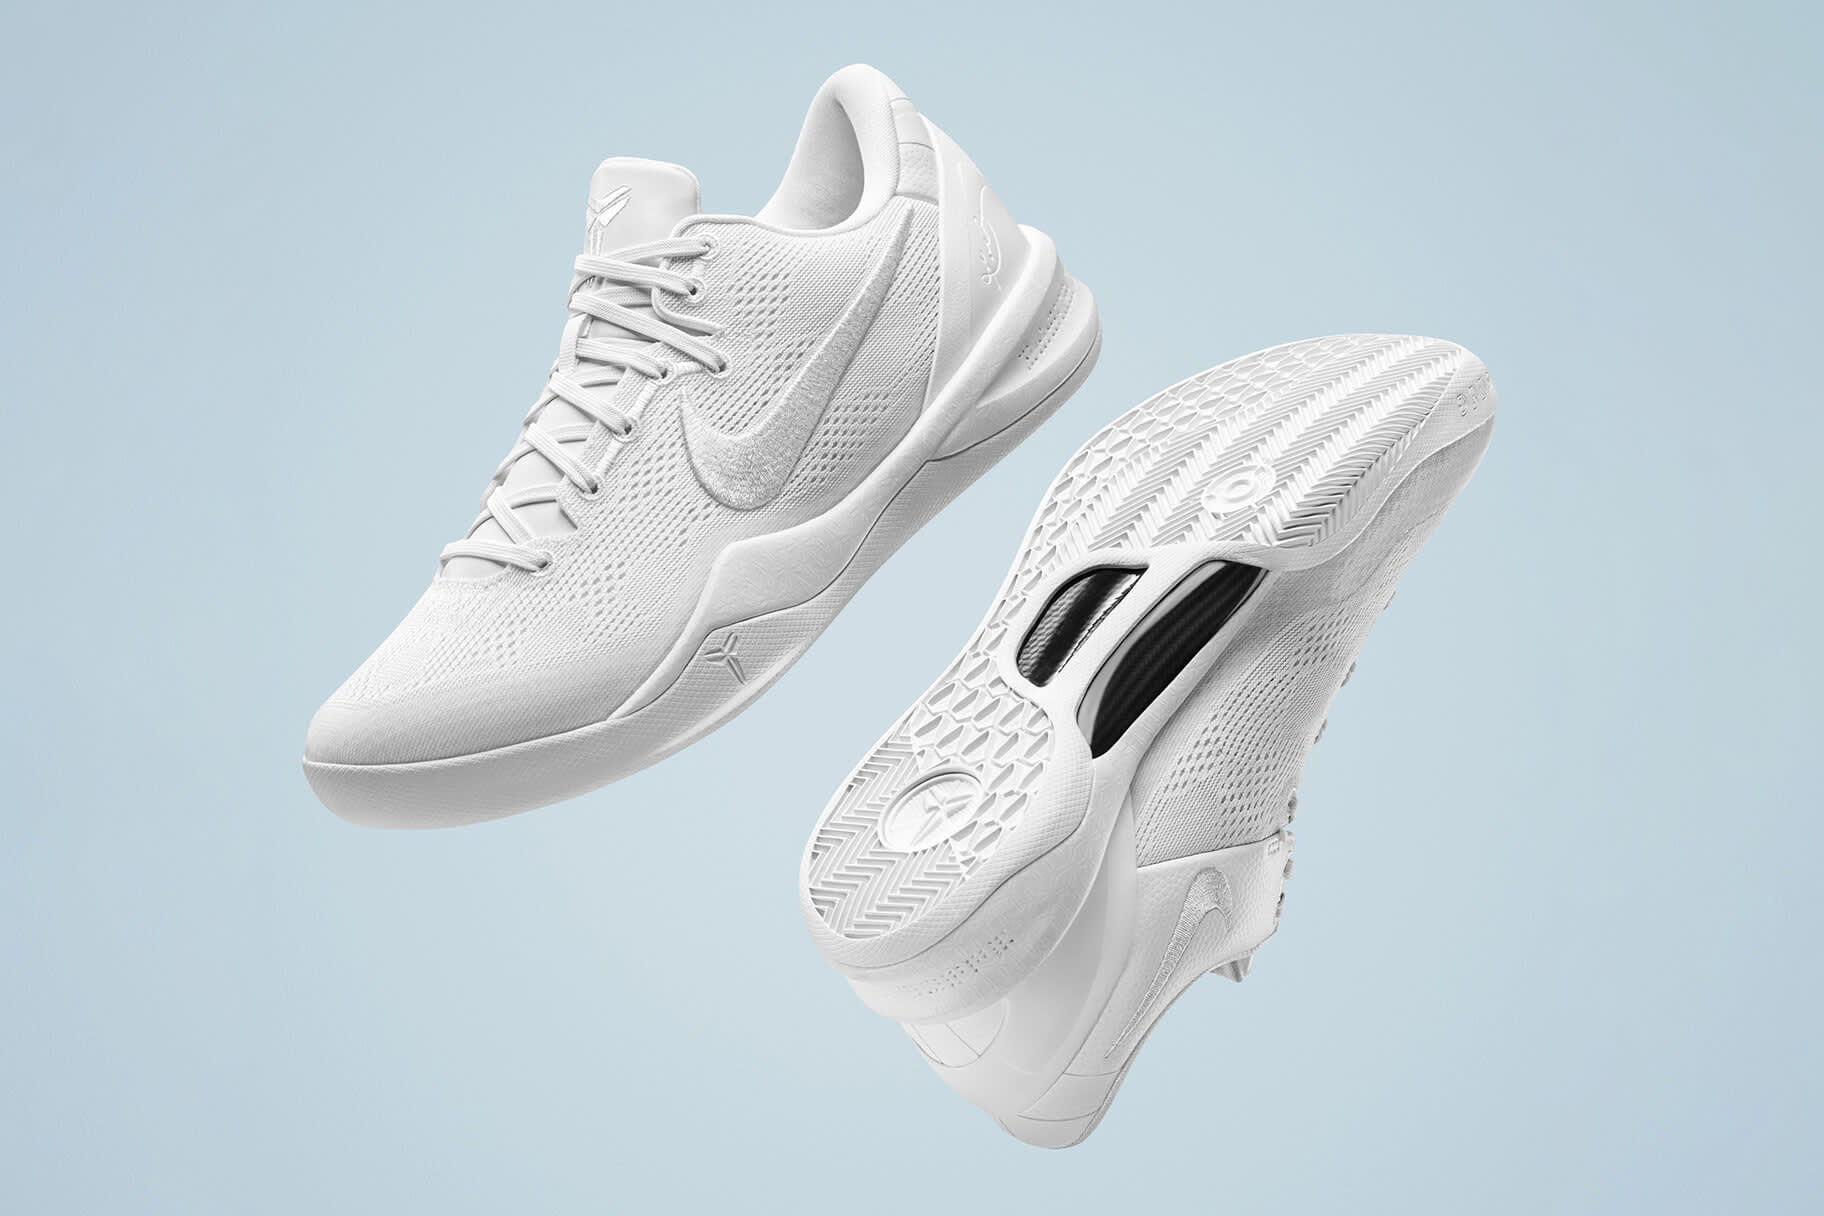 Nike lanza el Kobe 8 en memoria de la superestrella del básquetbol